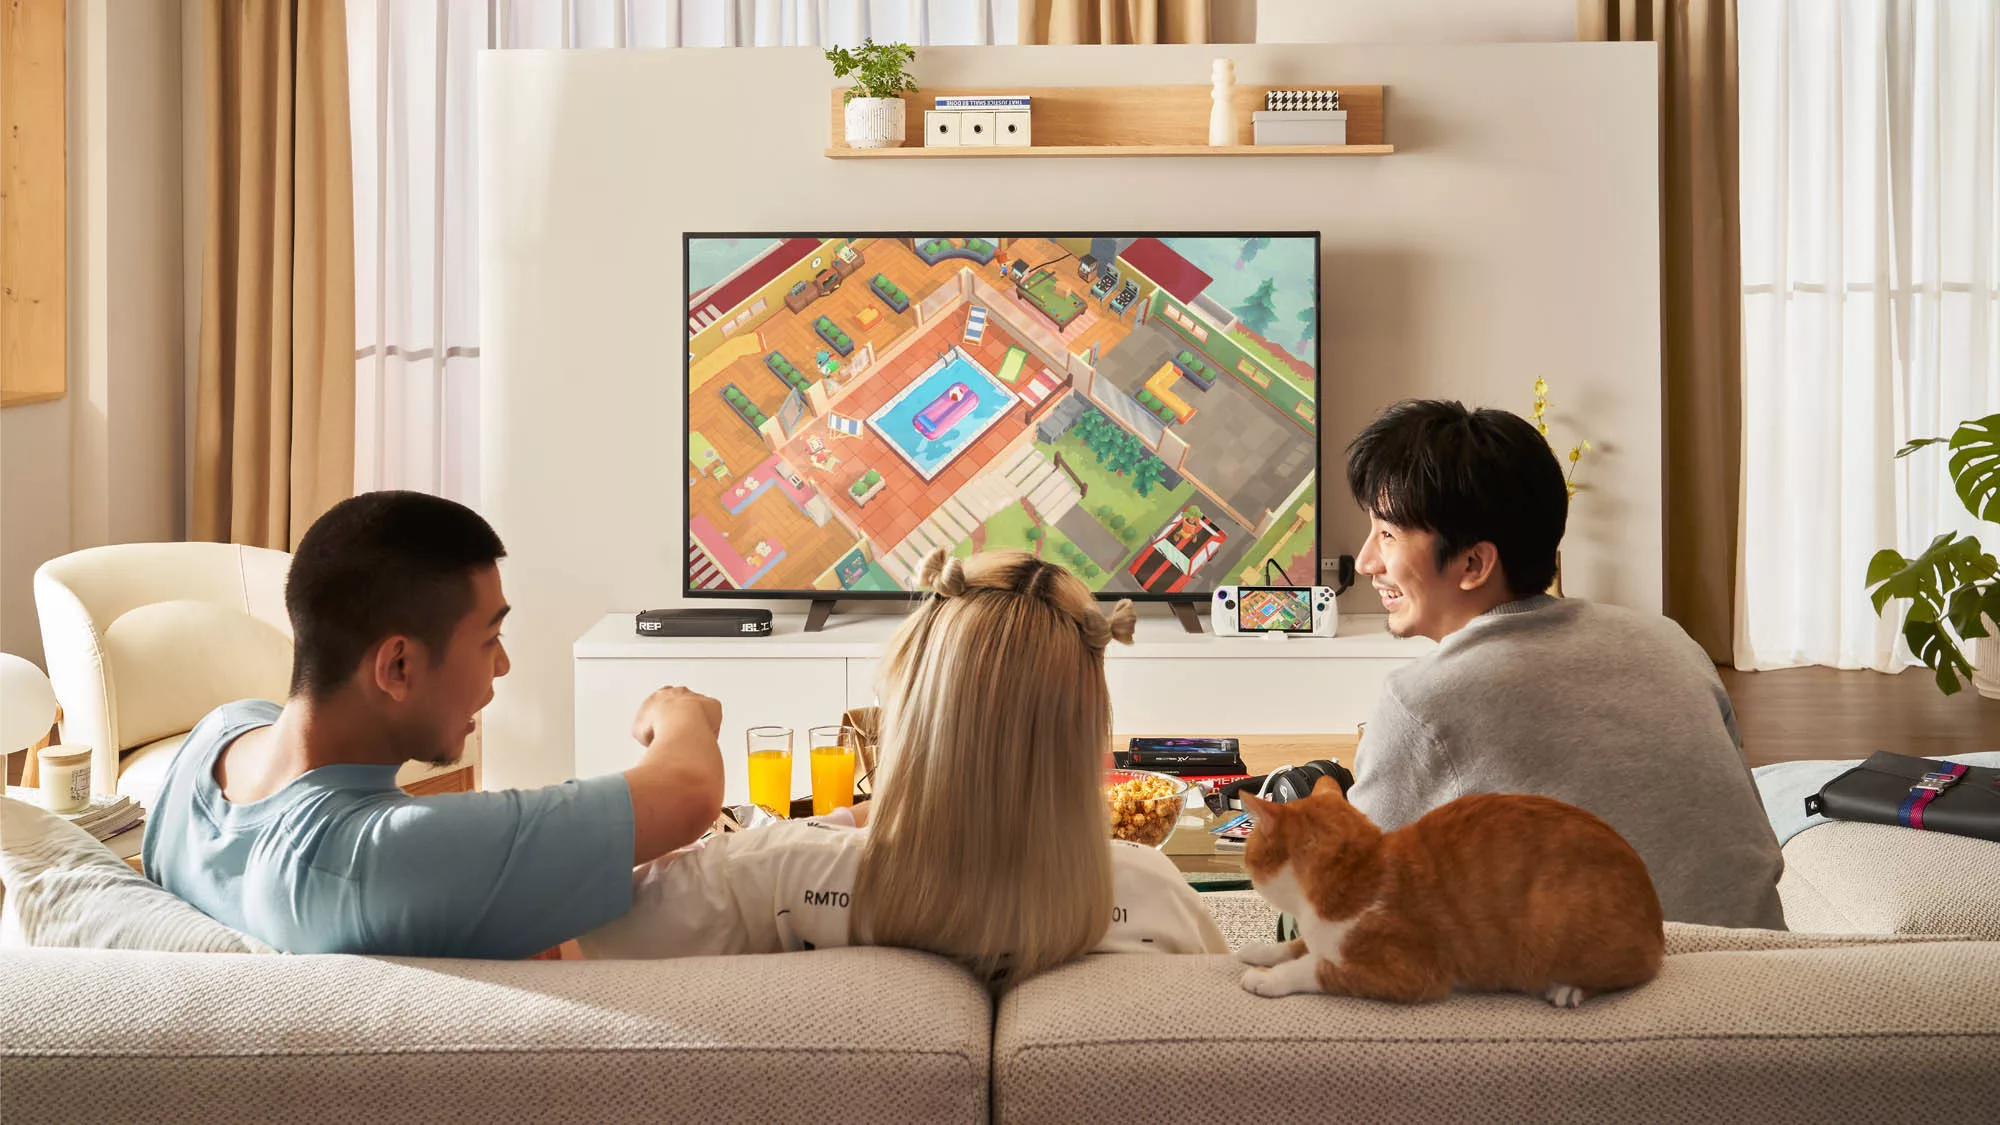 Фотография трех человек на диване, играющих в игру перед телевизором.